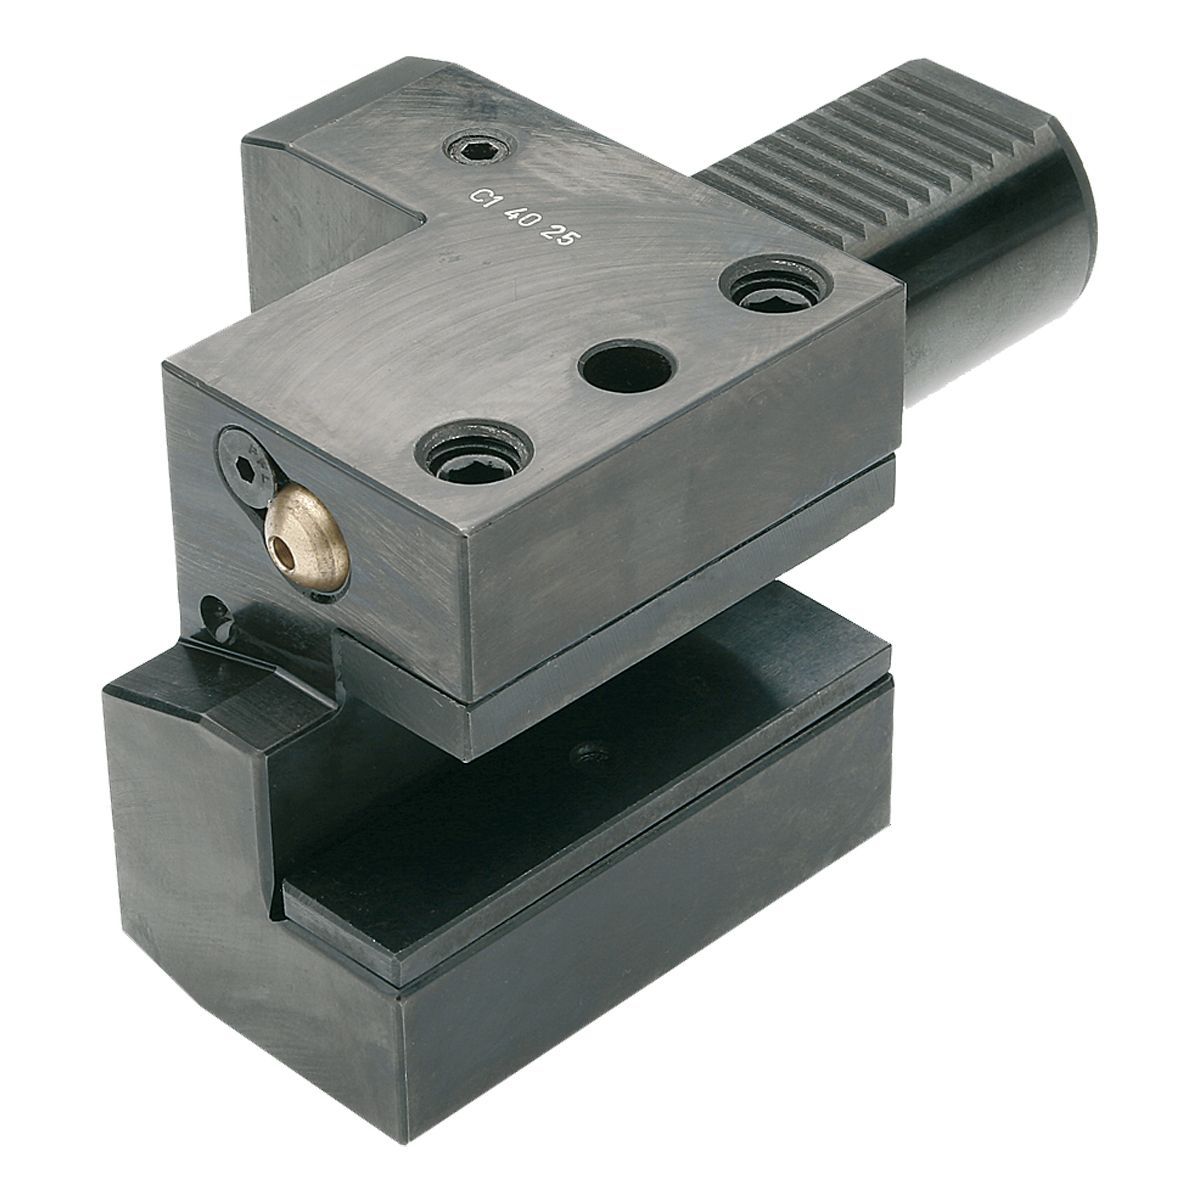 Axial-Werkzeughalter C1-40x25 DIN 69880 (ISO 10889)